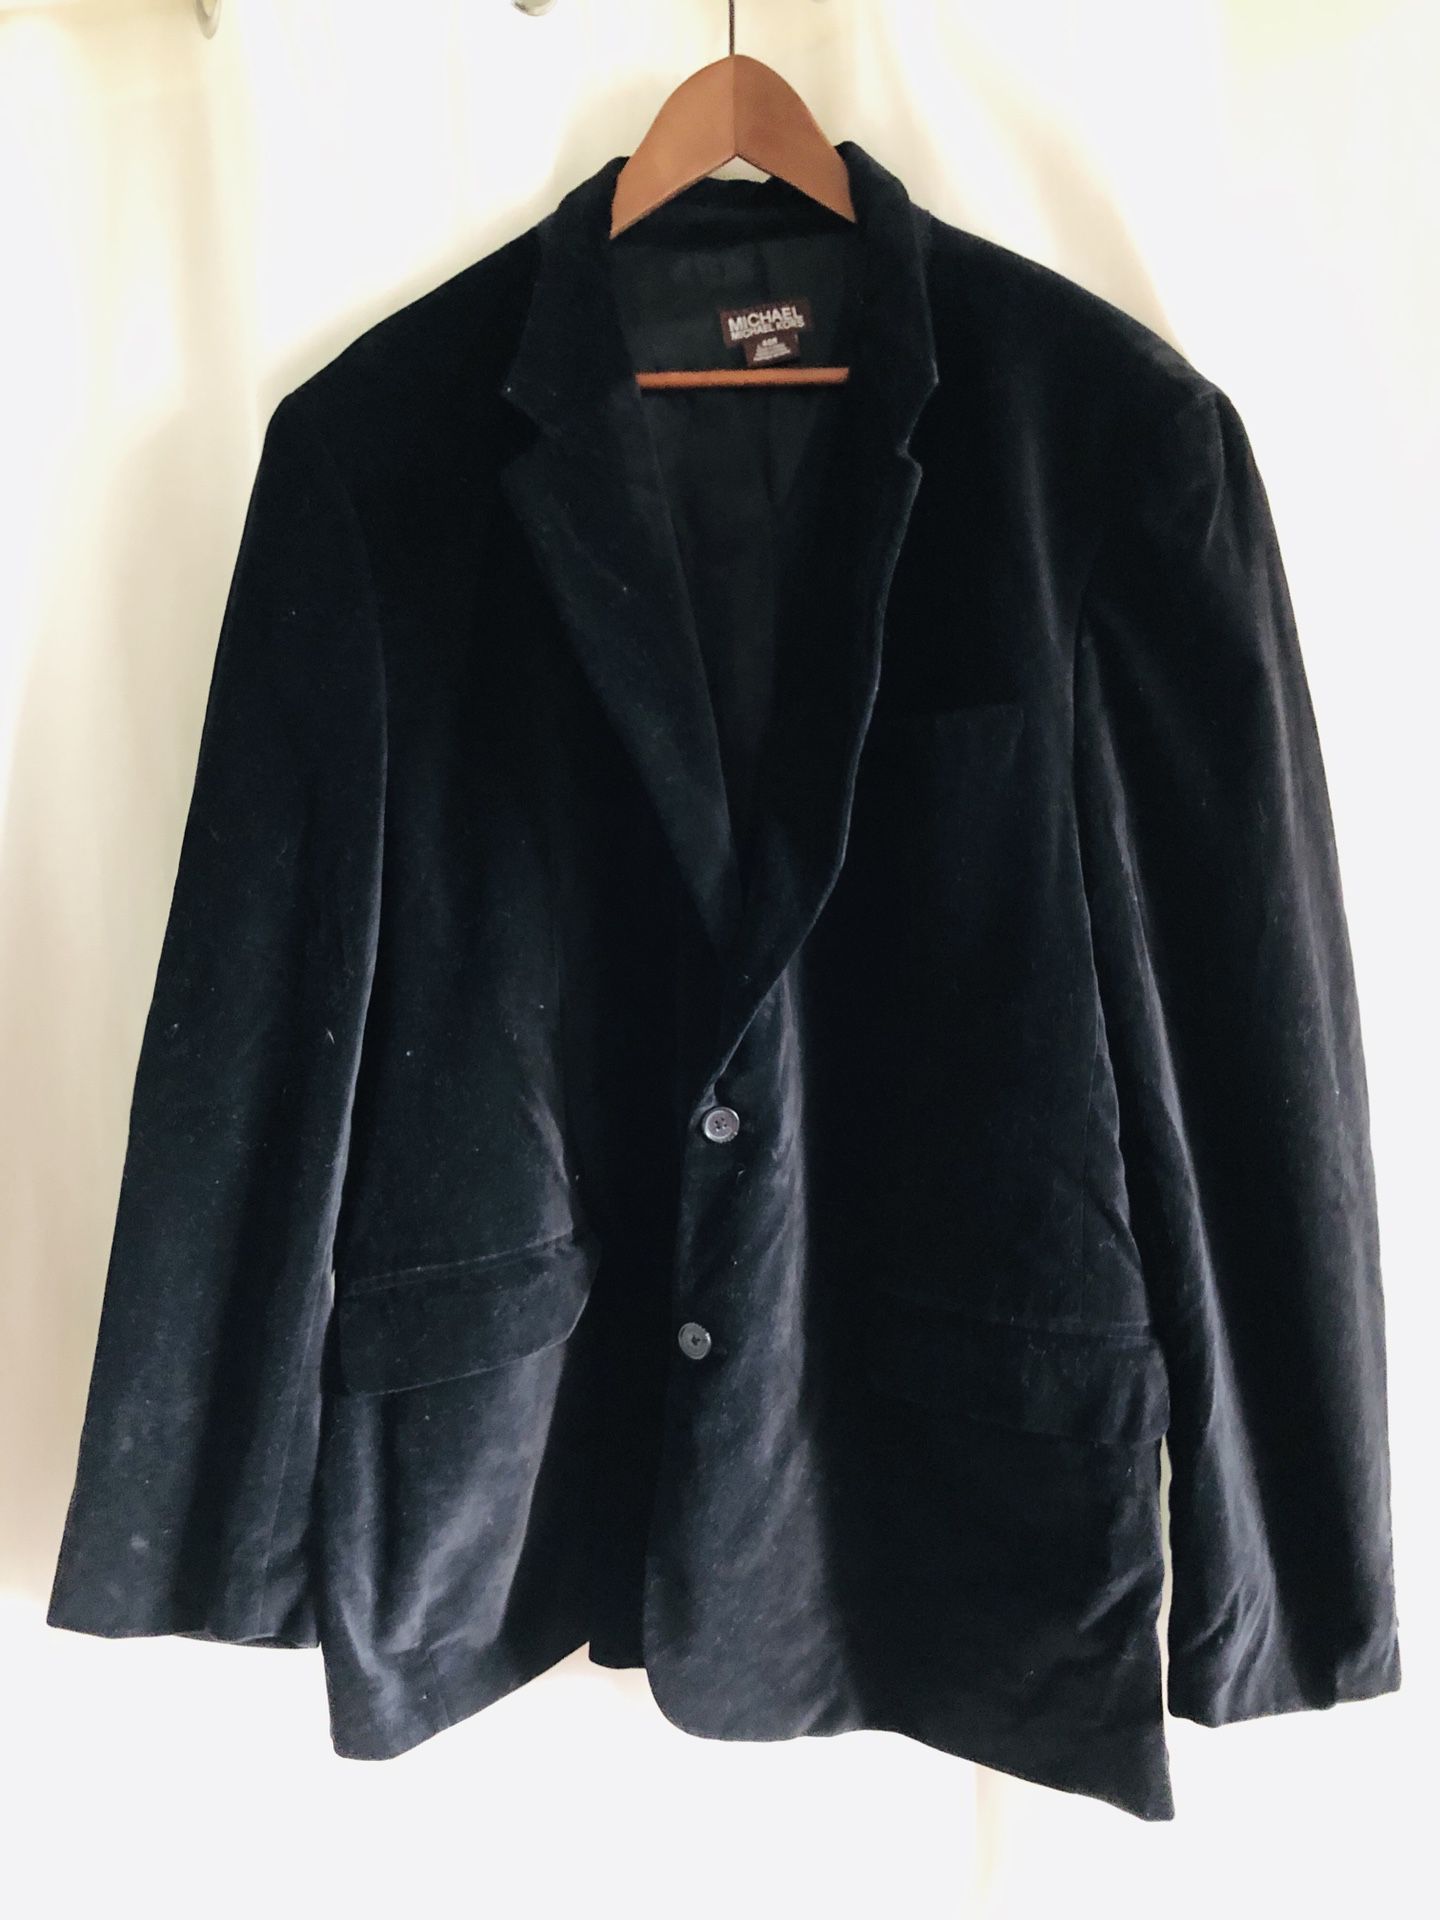 Men’s Michael Kors velvet jacket size 46R